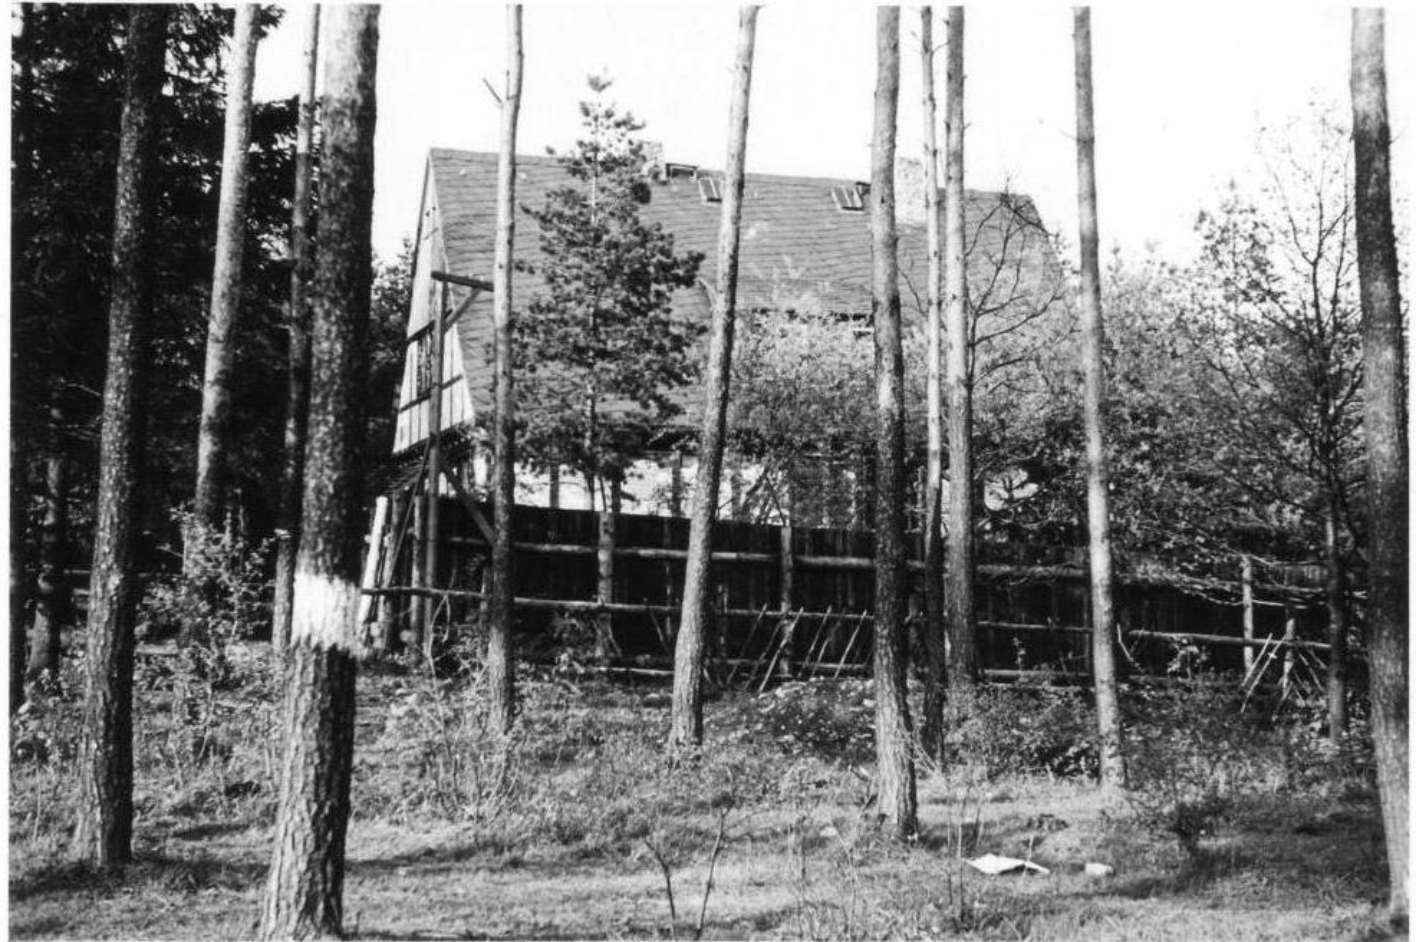 Zwischen Bäumen steht ein hoher Fachwerkbau, umgeben von einem blickdichten Holzzaun. Links auf dem Zaun steht ein Falkenposten.